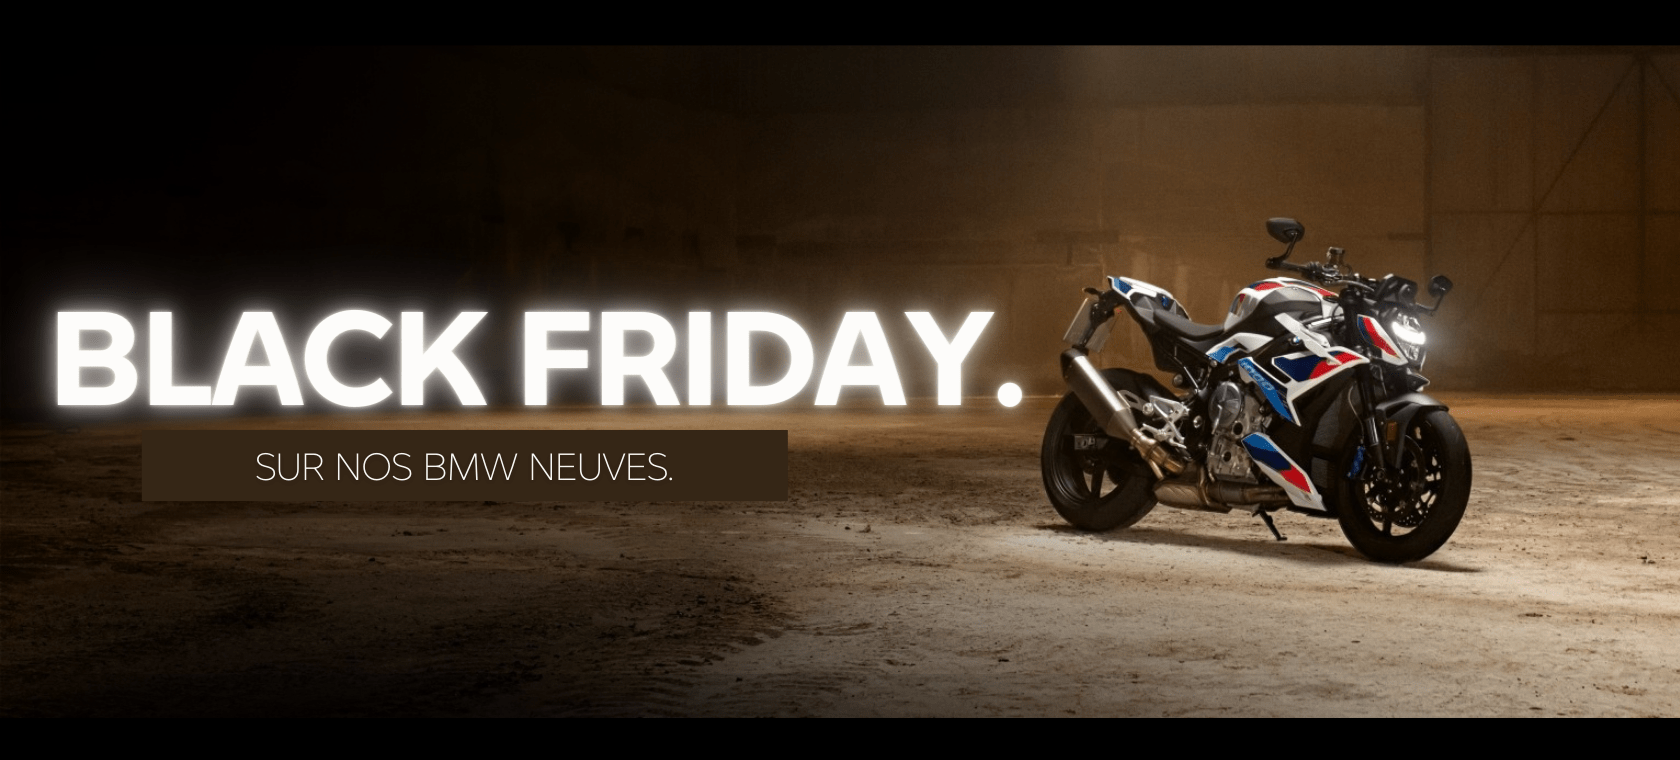 black friday moto BMW neuves